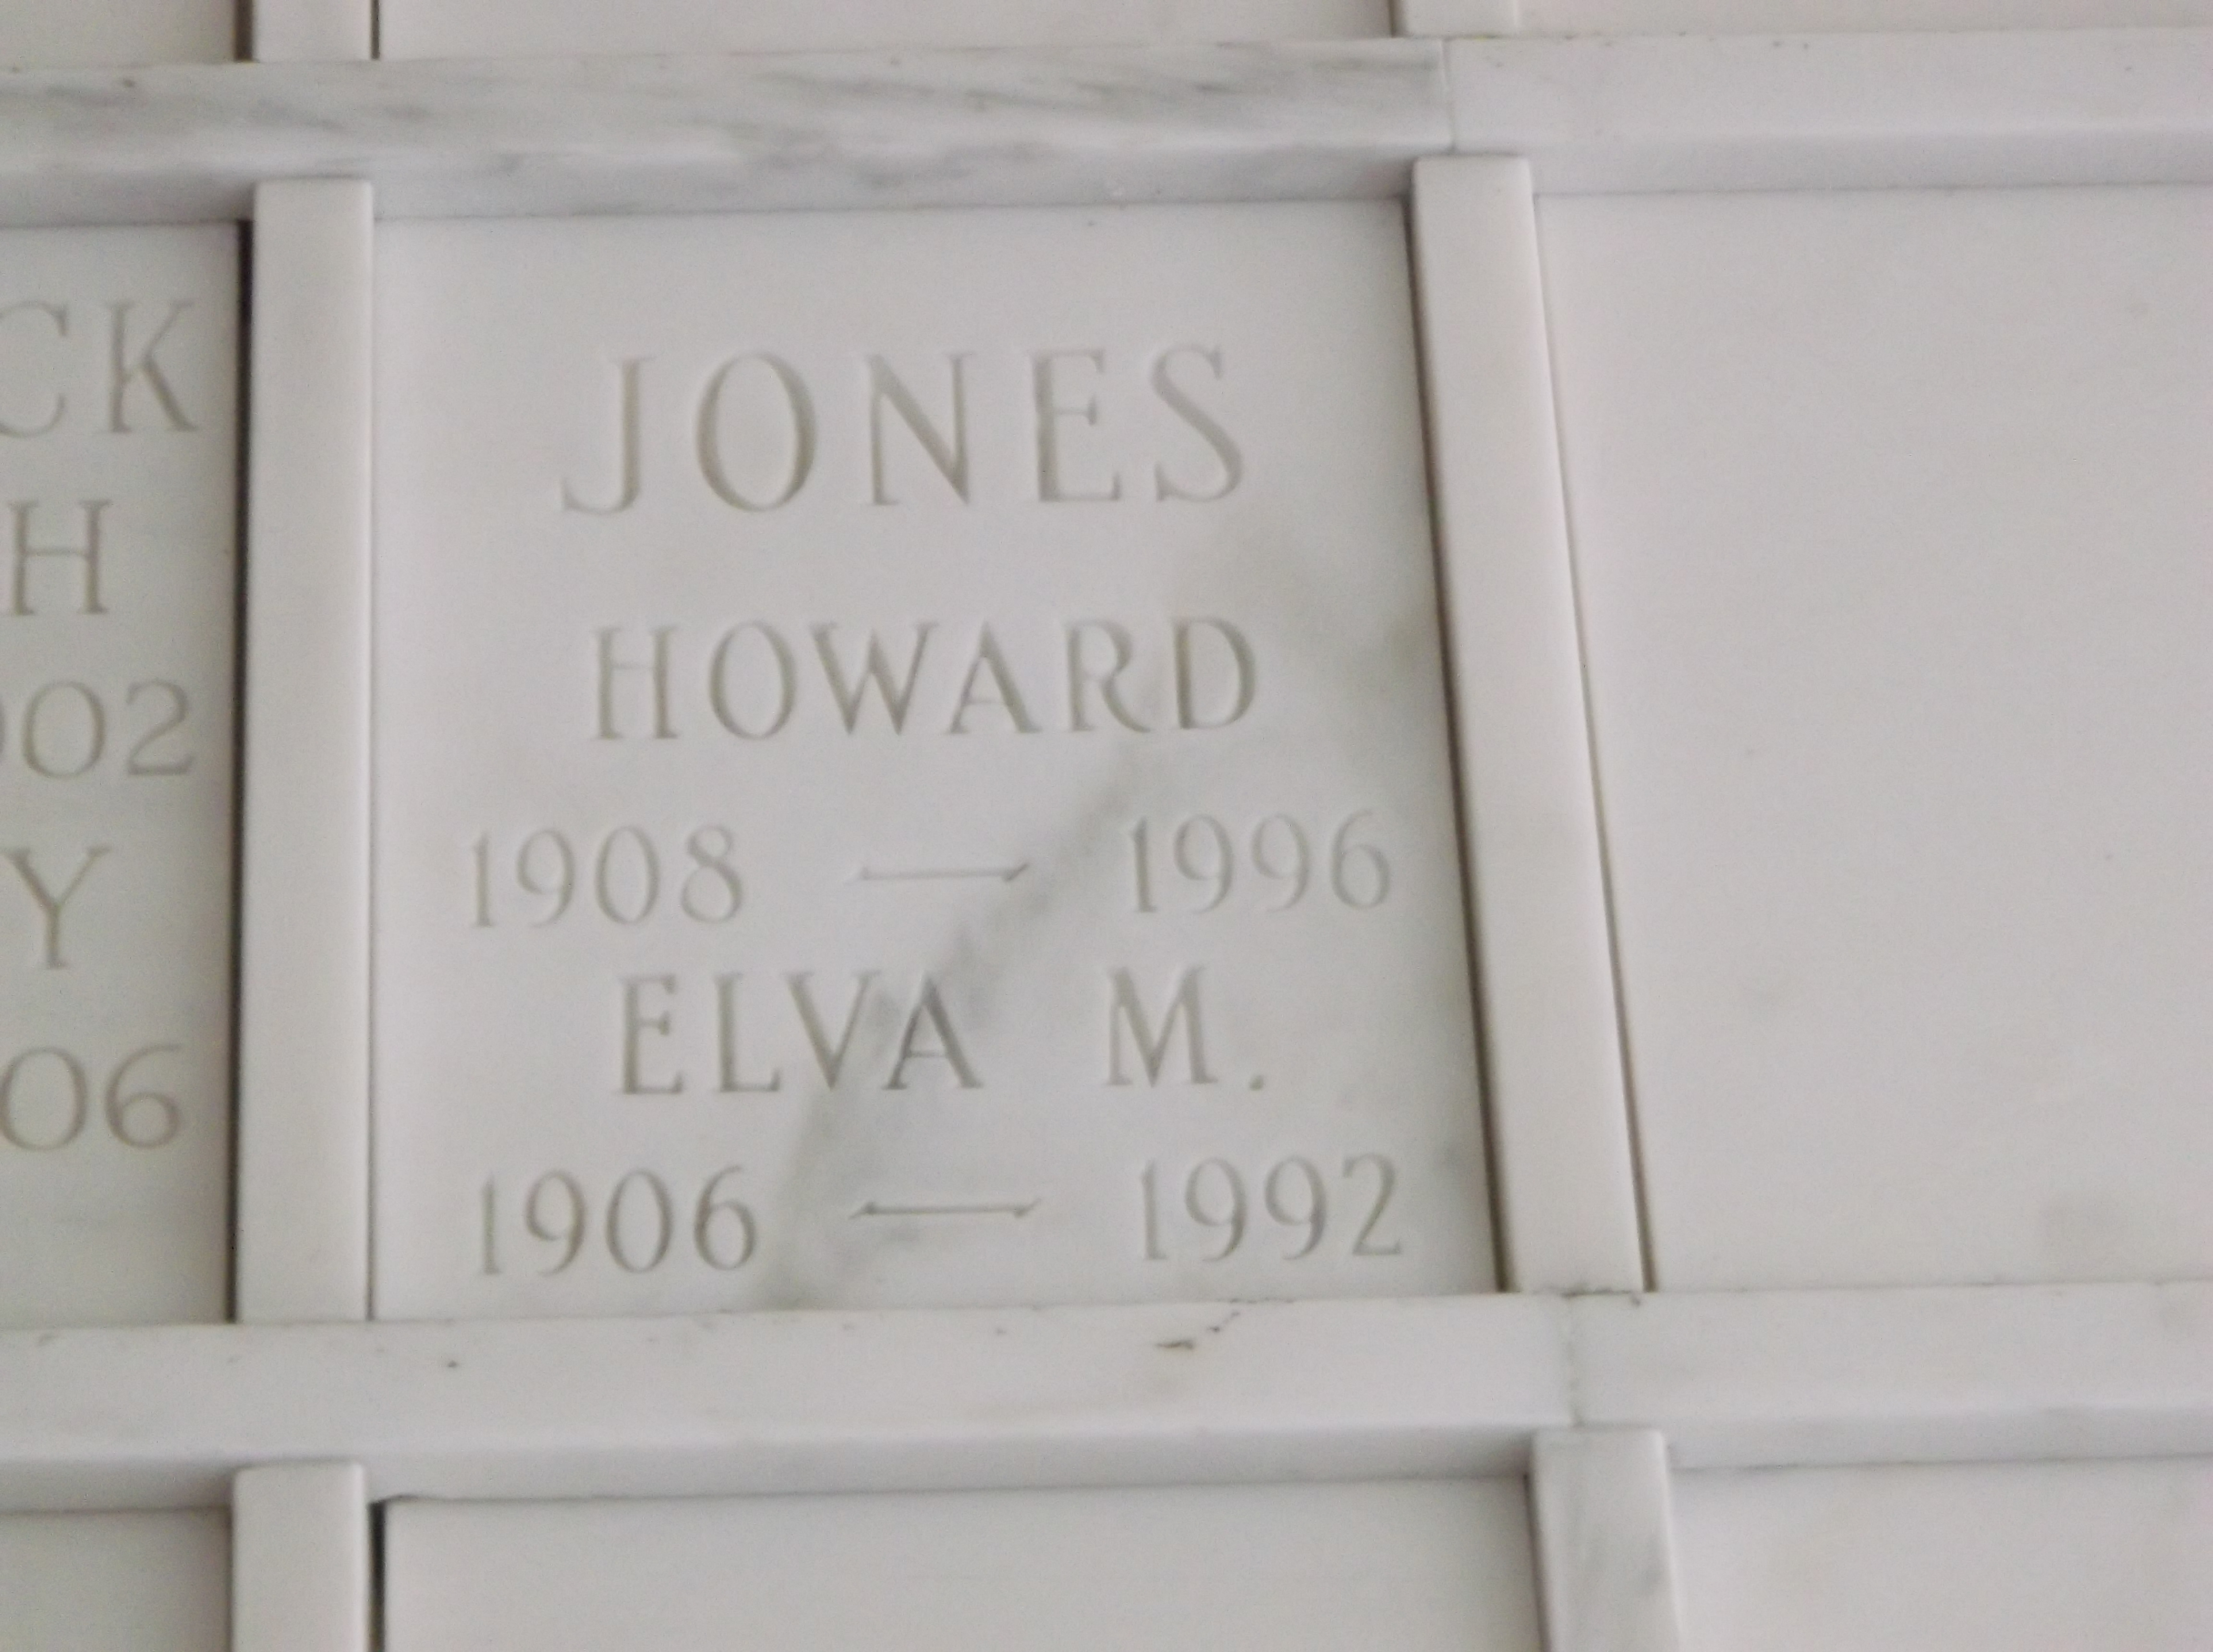 Elva M Jones